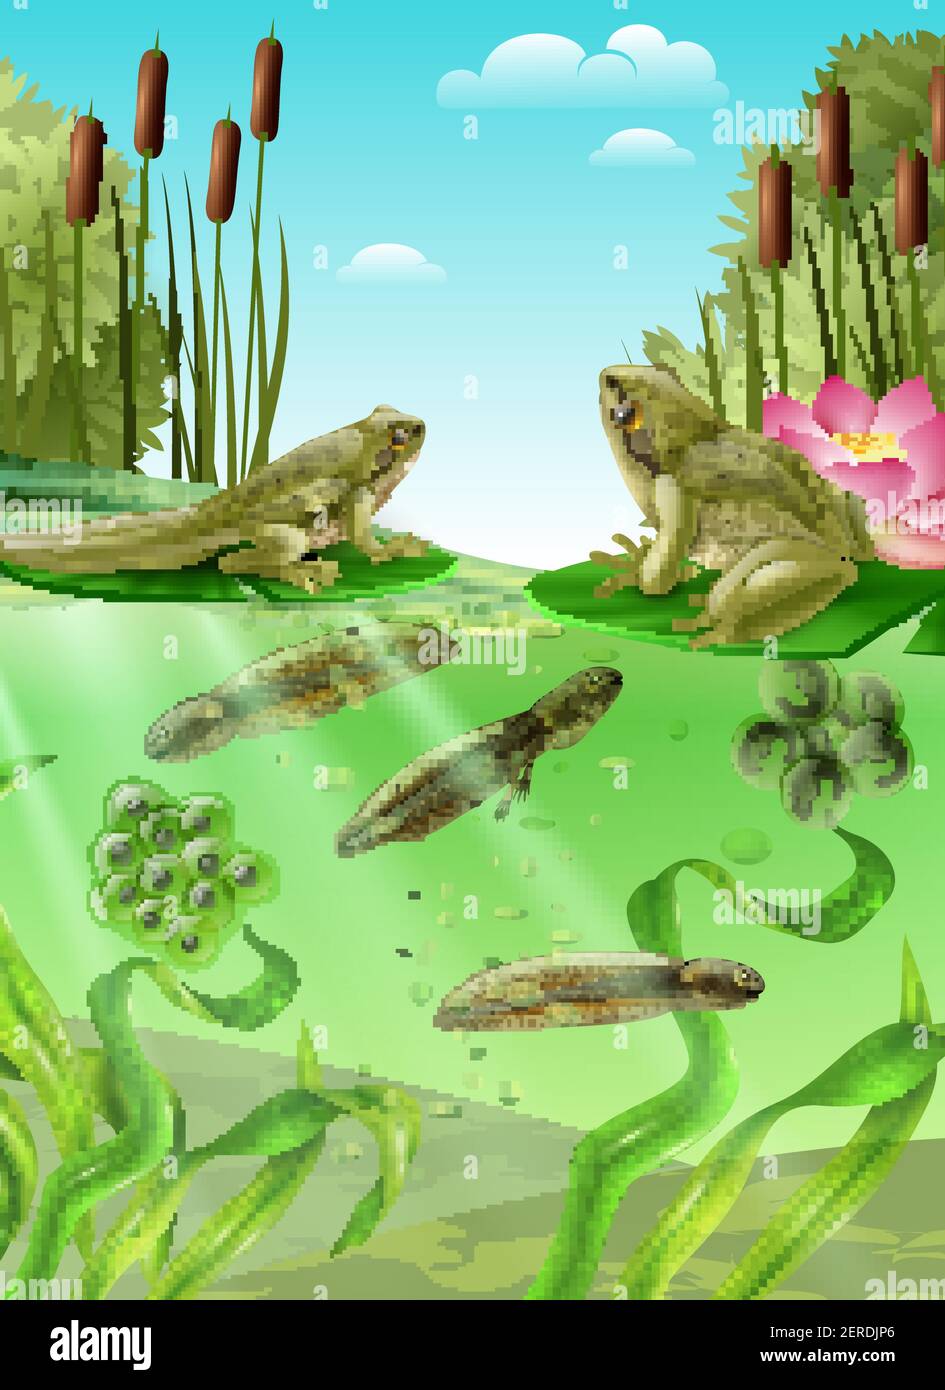 Rana ciclo di vita acqua tavole poster realistico con anfibio adulto tadpole di massa delle uova con illustrazione vettoriale delle gambe Illustrazione Vettoriale